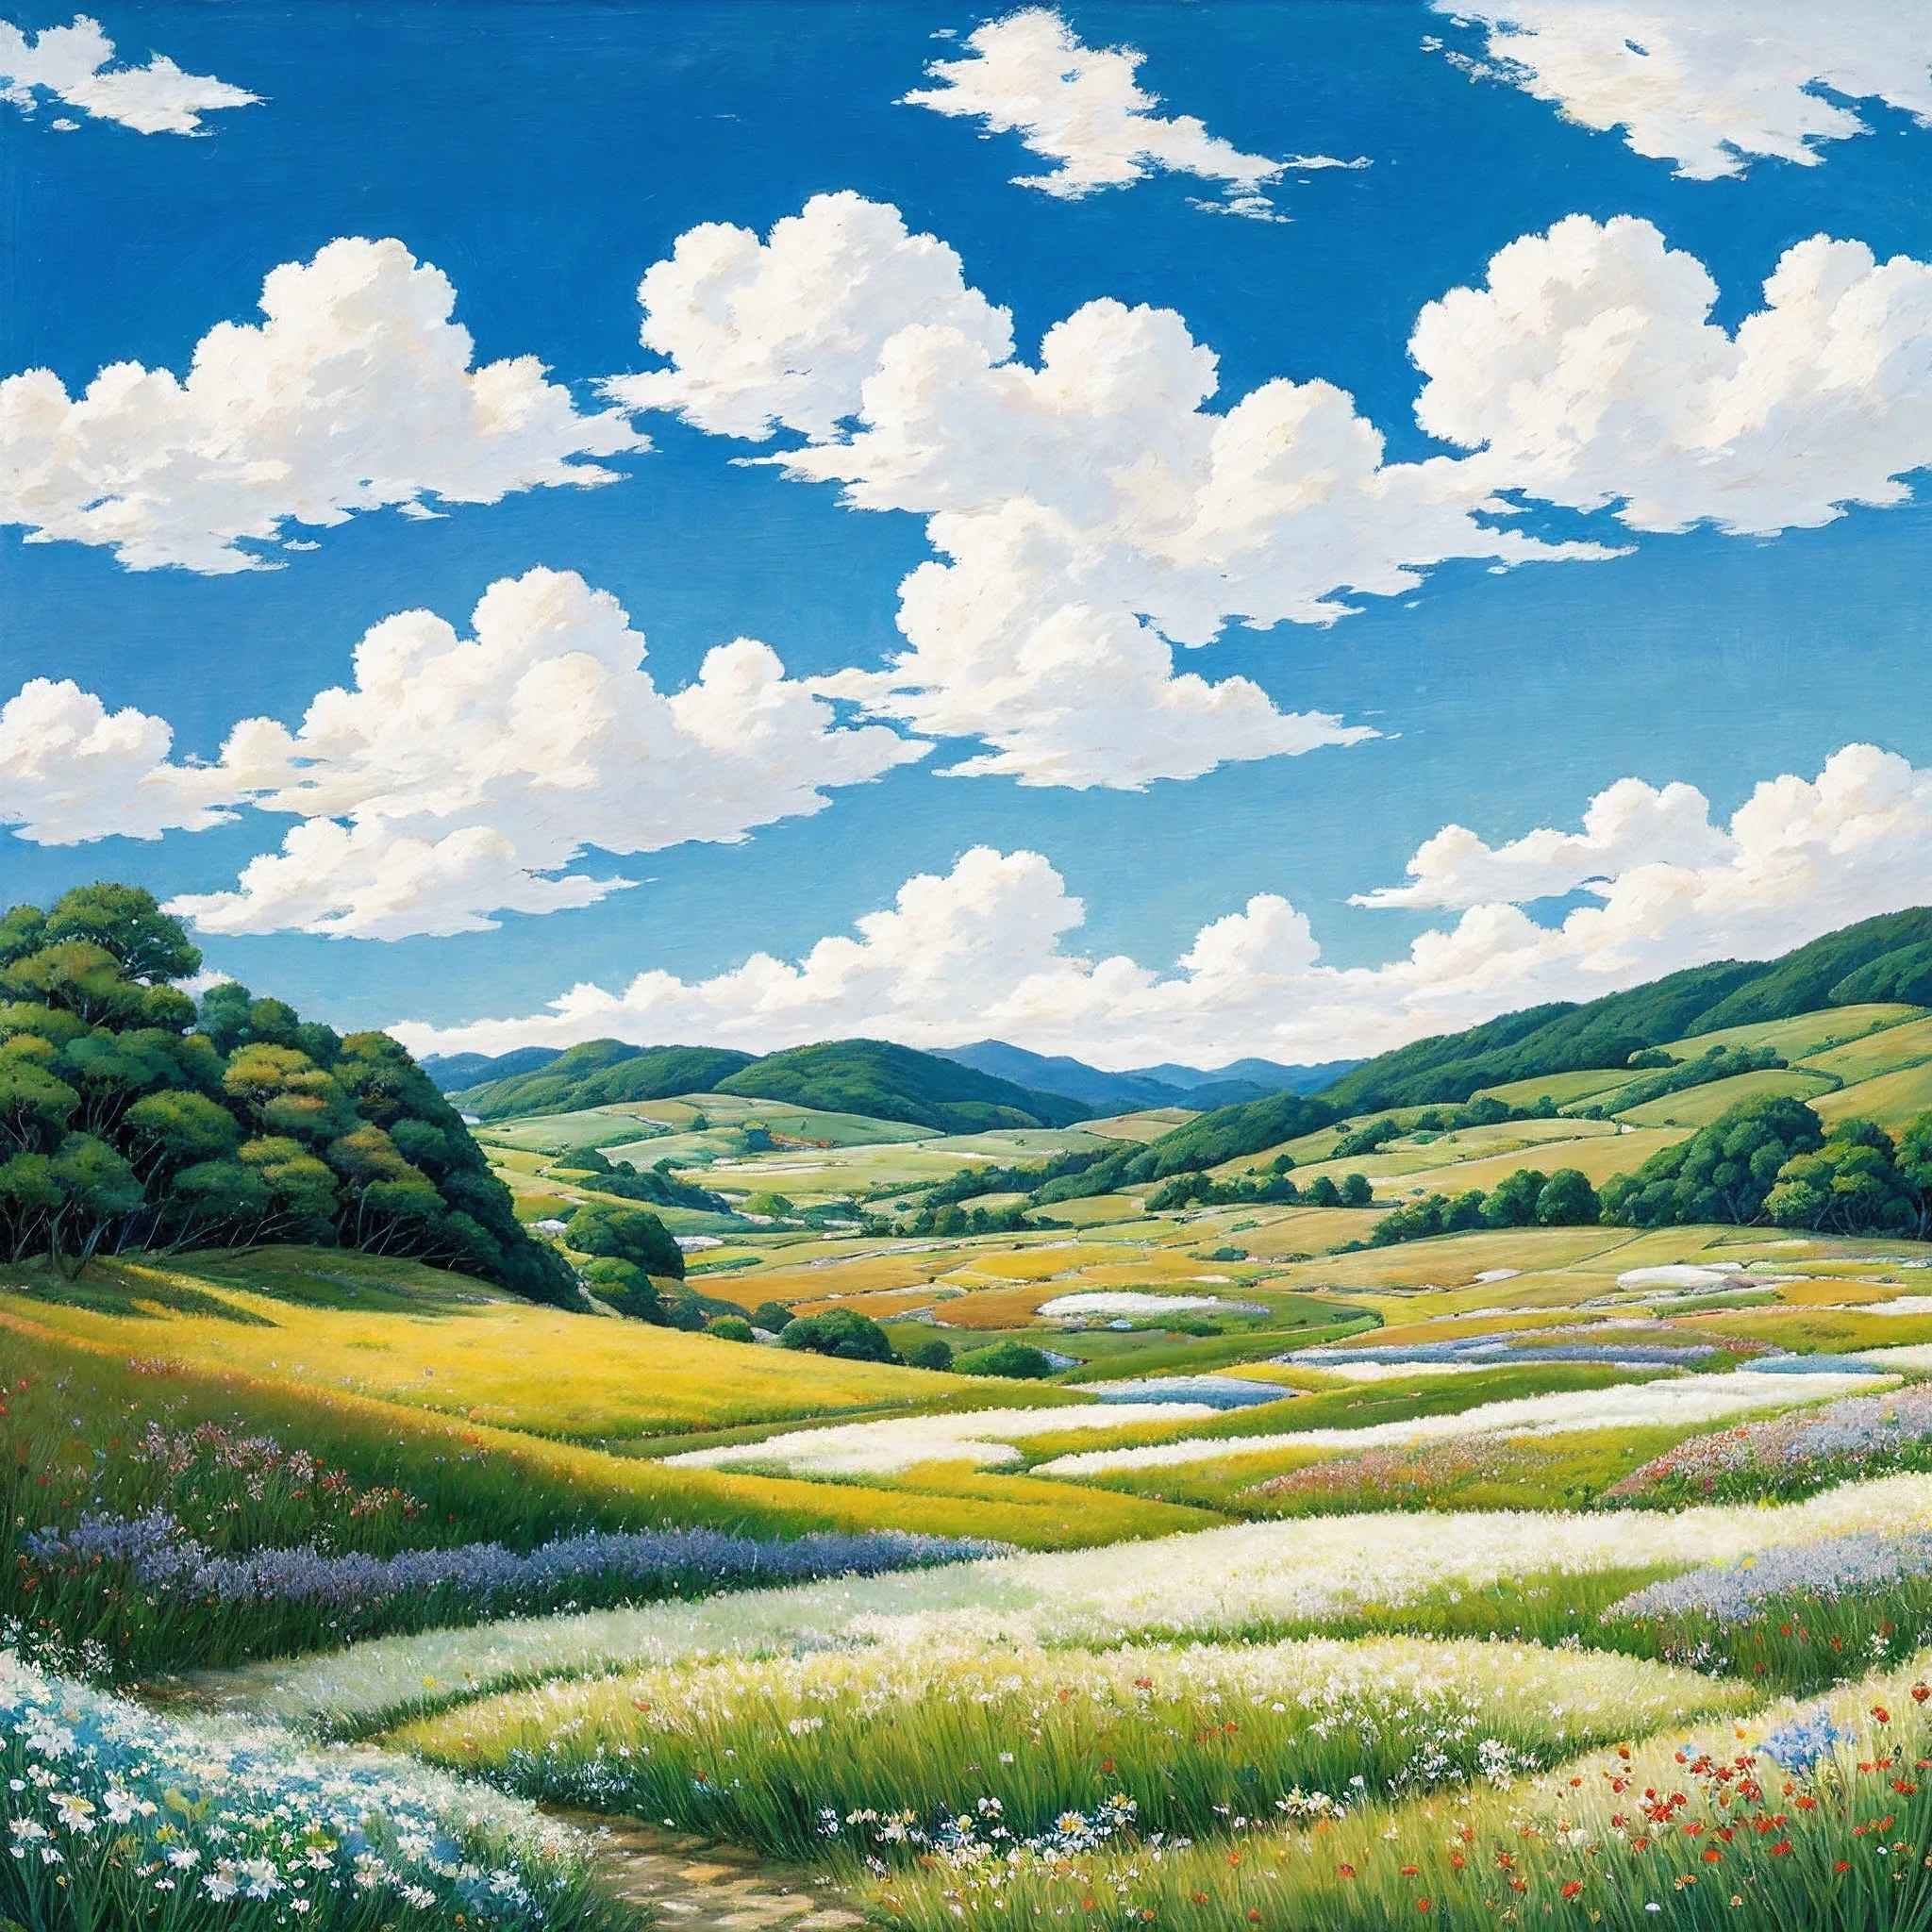 حقيقي, أصلي, لوحة زيتية جميلة ومذهلة للمناظر الطبيعية في استوديو جيبلي هاياو ميازاكي&#39;مروج بتلة مع سماء زرقاء وسحب بيضاء